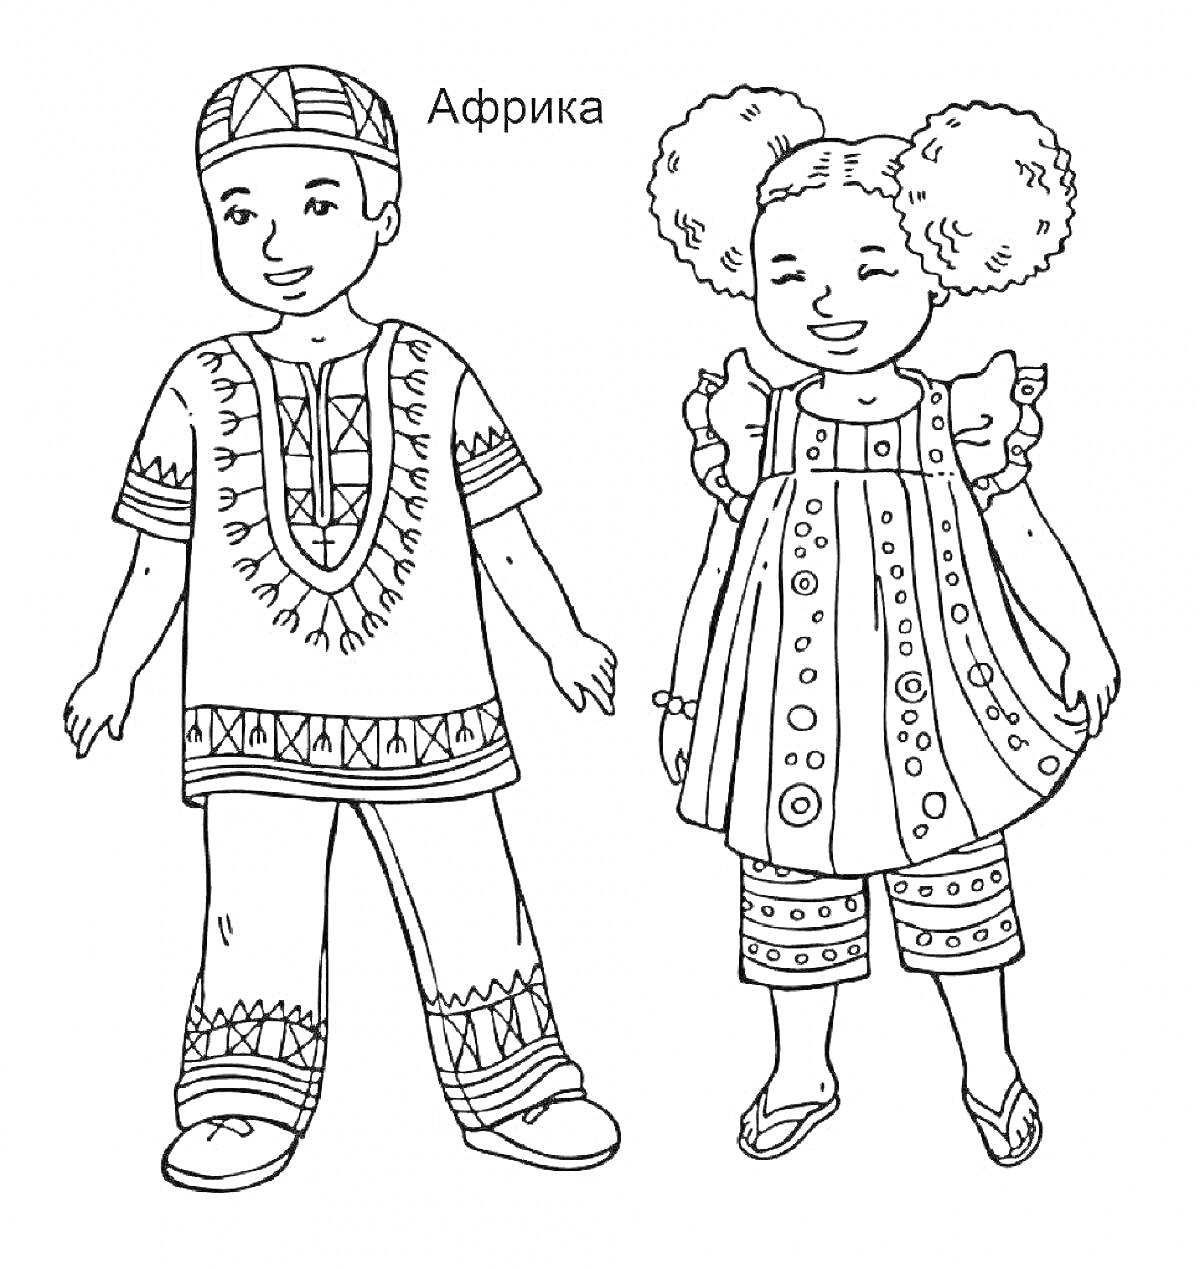 Раскраска Национальные африканские костюмы для мальчика и девочки. Мальчик в традиционной рубашке с узорами и брюках с орнаментом, на голове национальная шапка. Девочка в платье с узорами, брюках и босоножках, украшения на волосах.